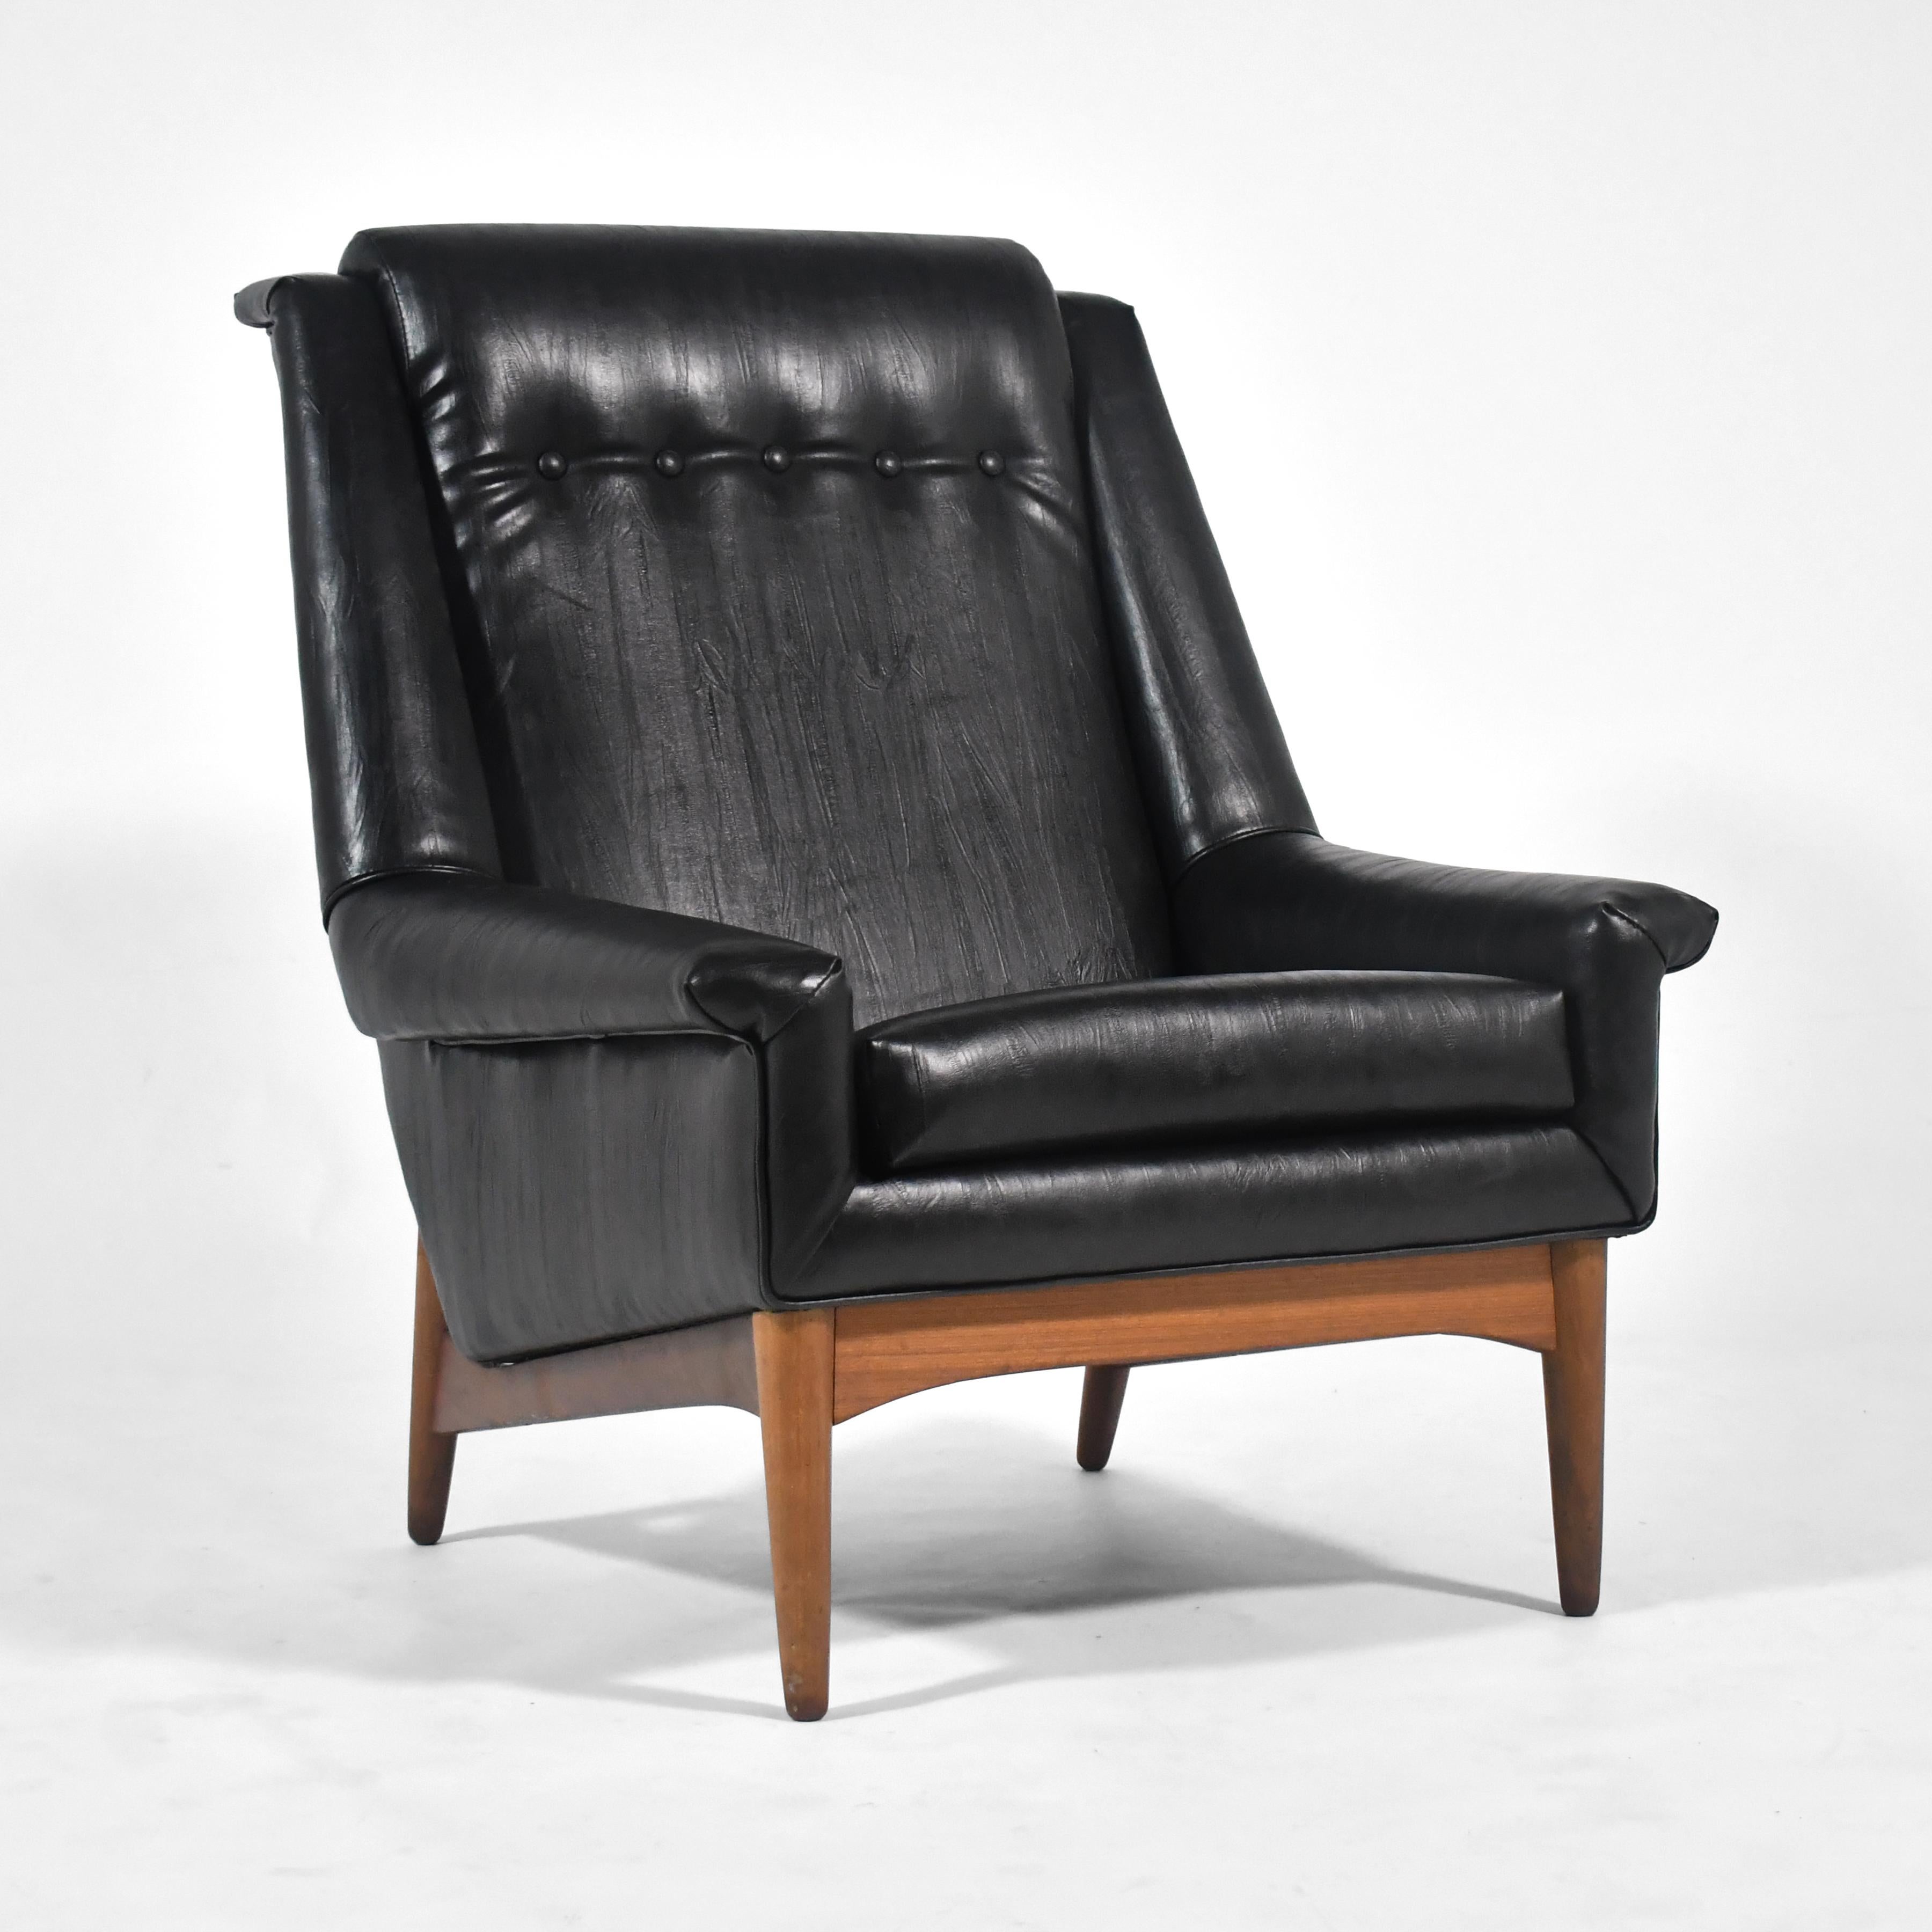 Cette généreuse chaise longue conçue par Folke Ohlsson pour DUX est d'une beauté frappante et d'un confort remarquable.

La base en noyer soutient le corps revêtu de similicuir noir.

37 